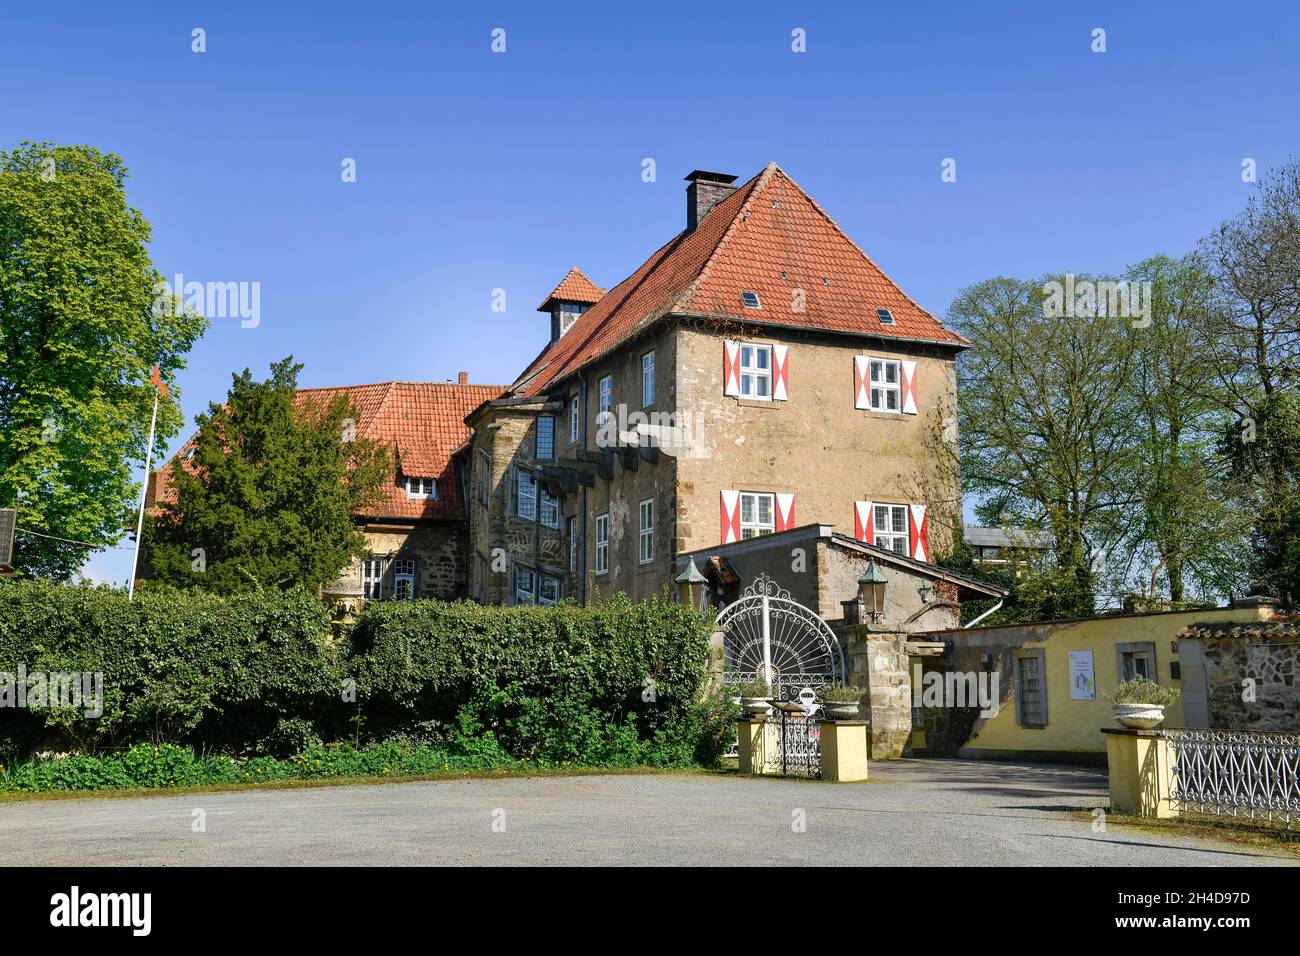 Schloss Hotel, Petershagen, Kreis Minden-Lübbecke, Nordrhein-Westfalen, Deutschland Stock Photo